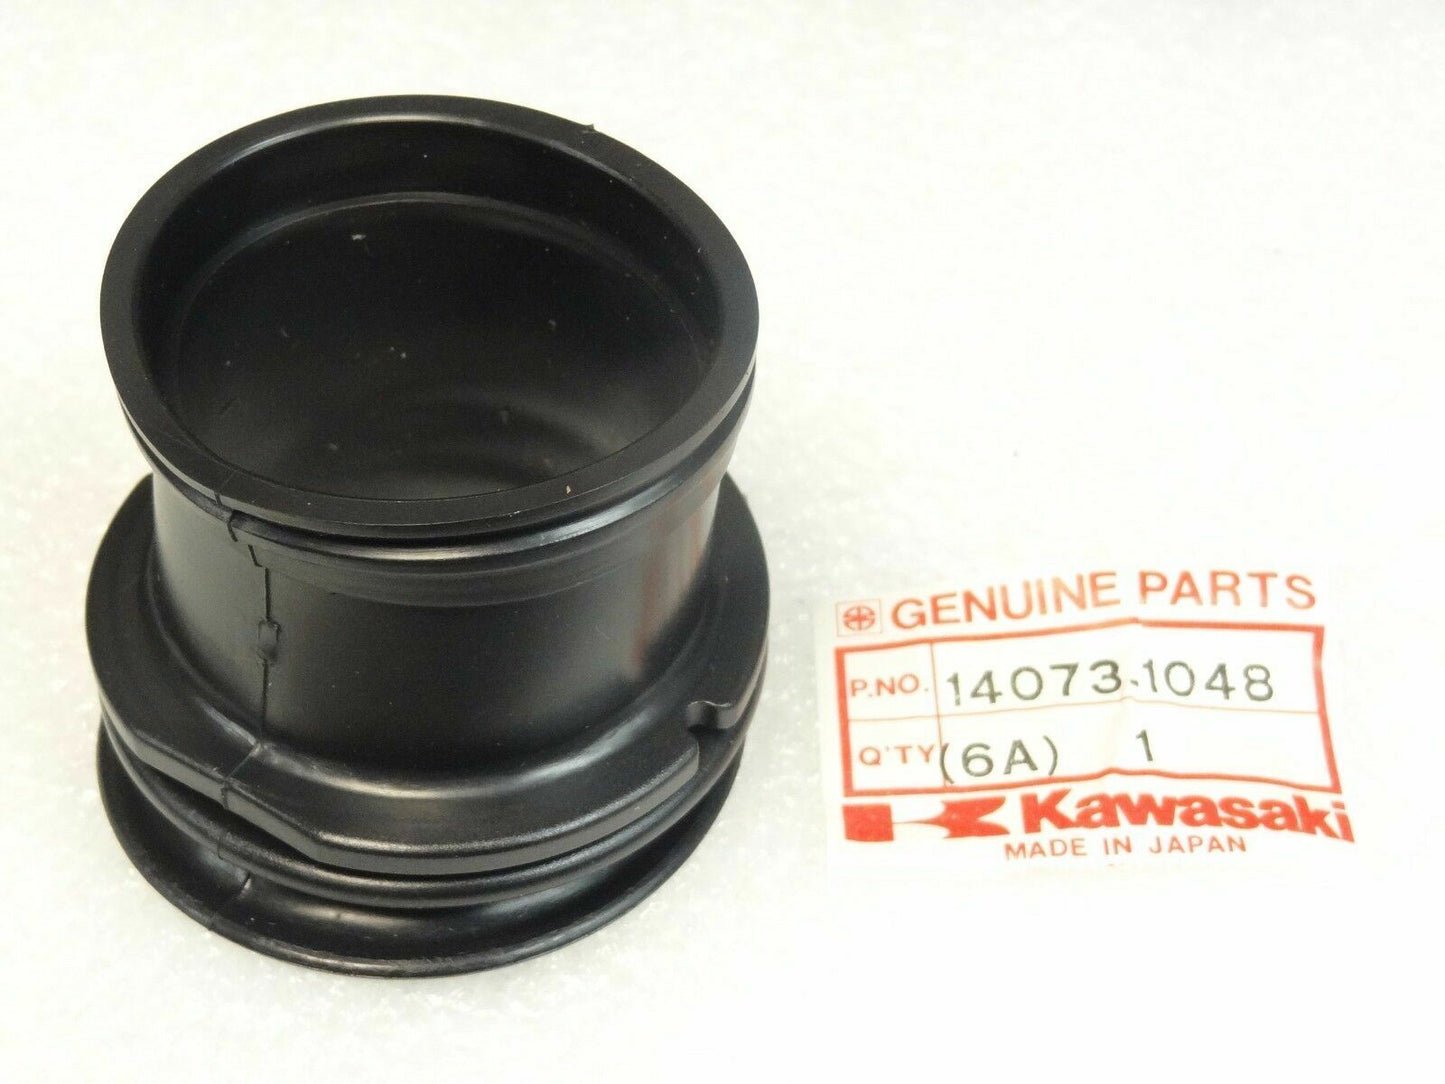 Kawasaki KZ1000 Air Filter Duct 4pc set NEW Genuine OEM Parts 14073-1048 x 4